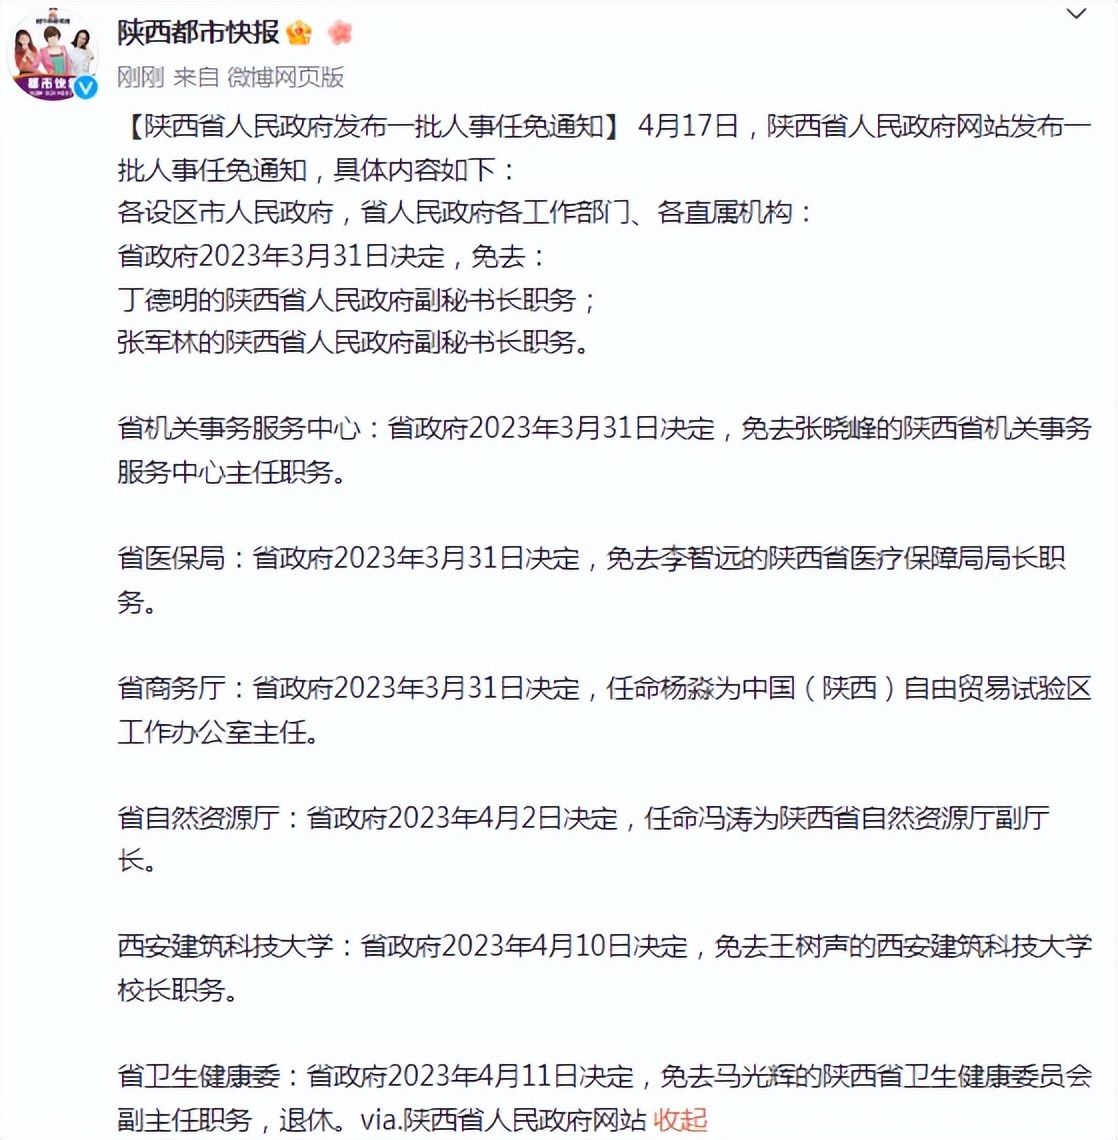 陕西省人民政府发布一批人事任免通知